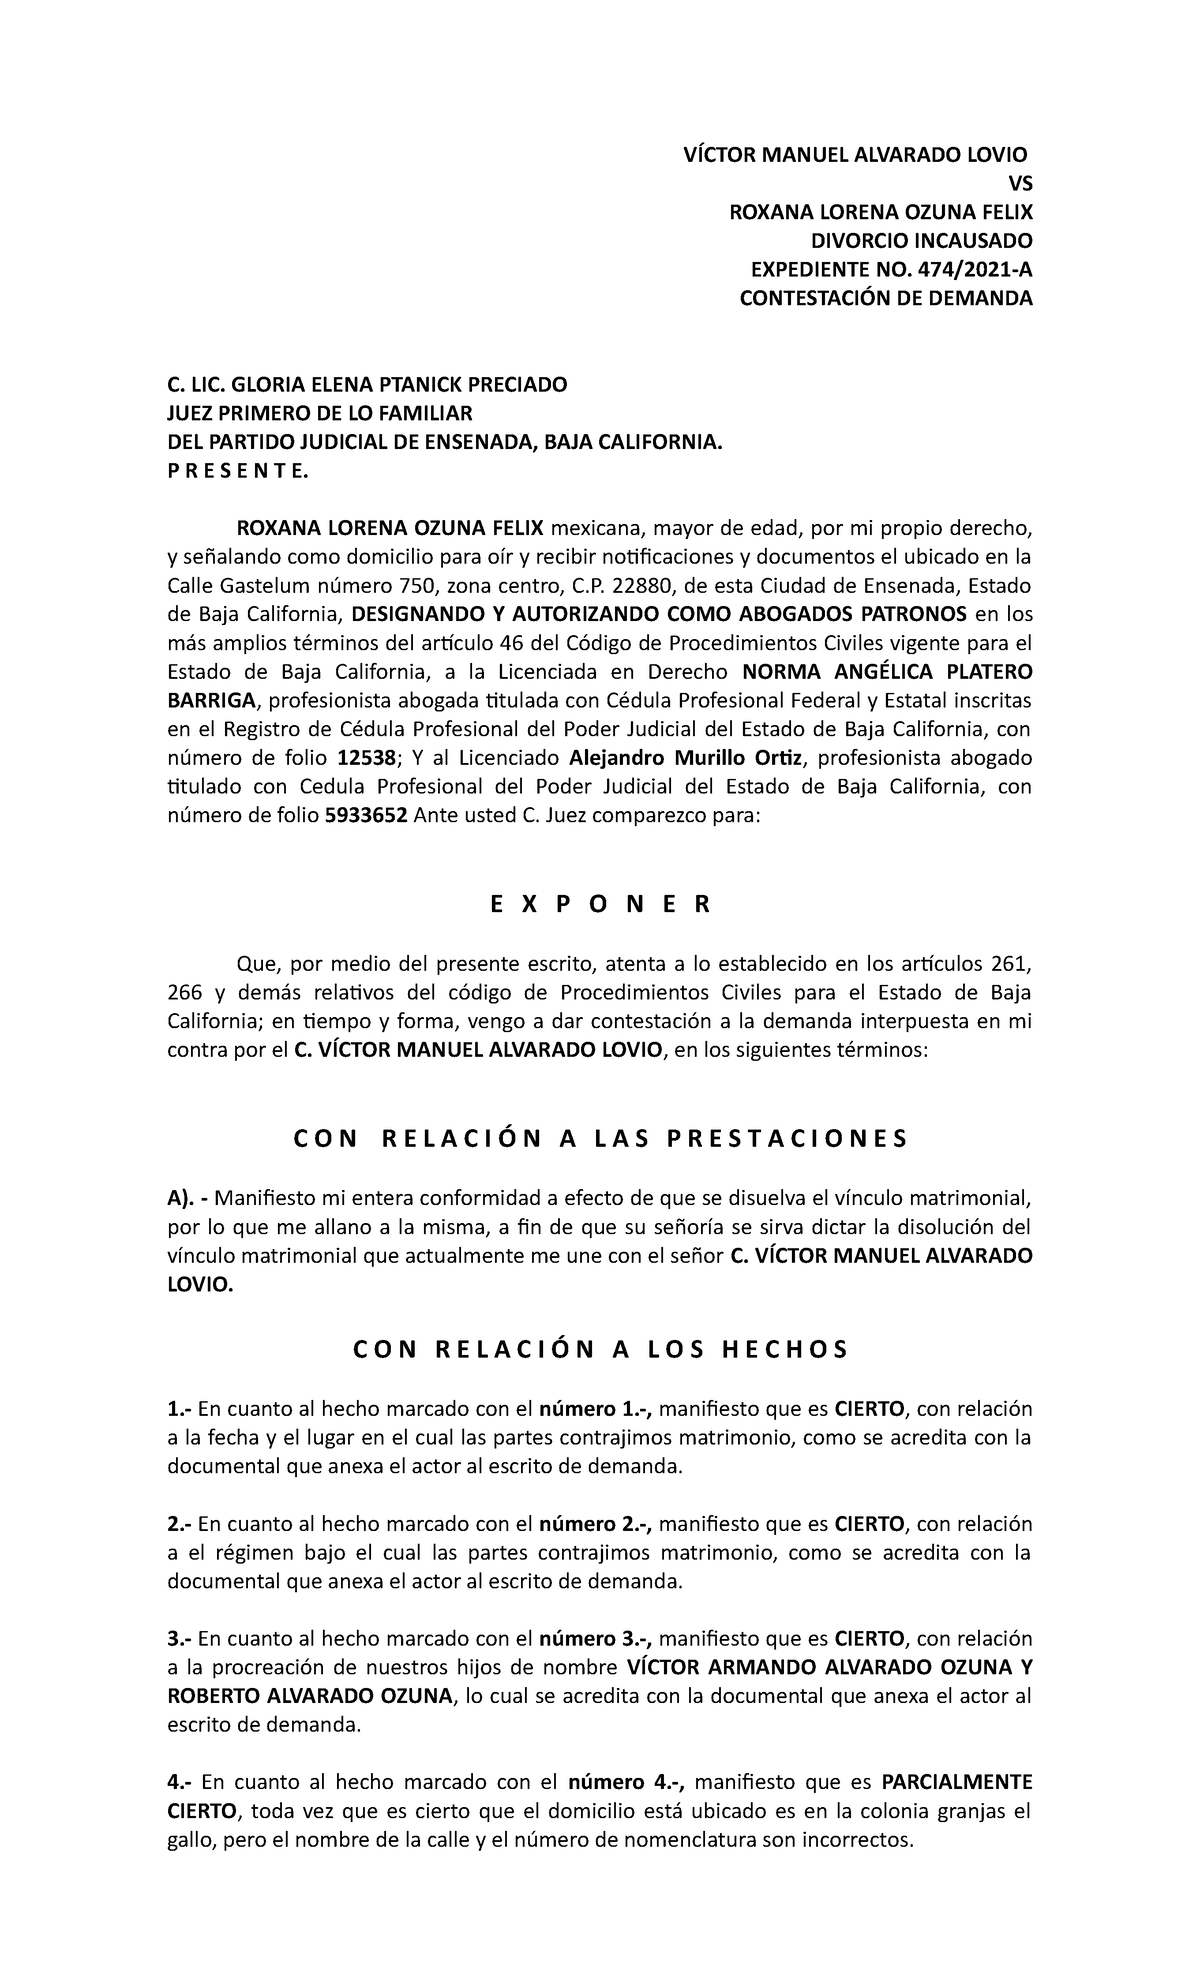 Contestación y Reconvención de demanda de divorcio incausado - VÍCTOR  MANUEL ALVARADO LOVIO VS - Studocu